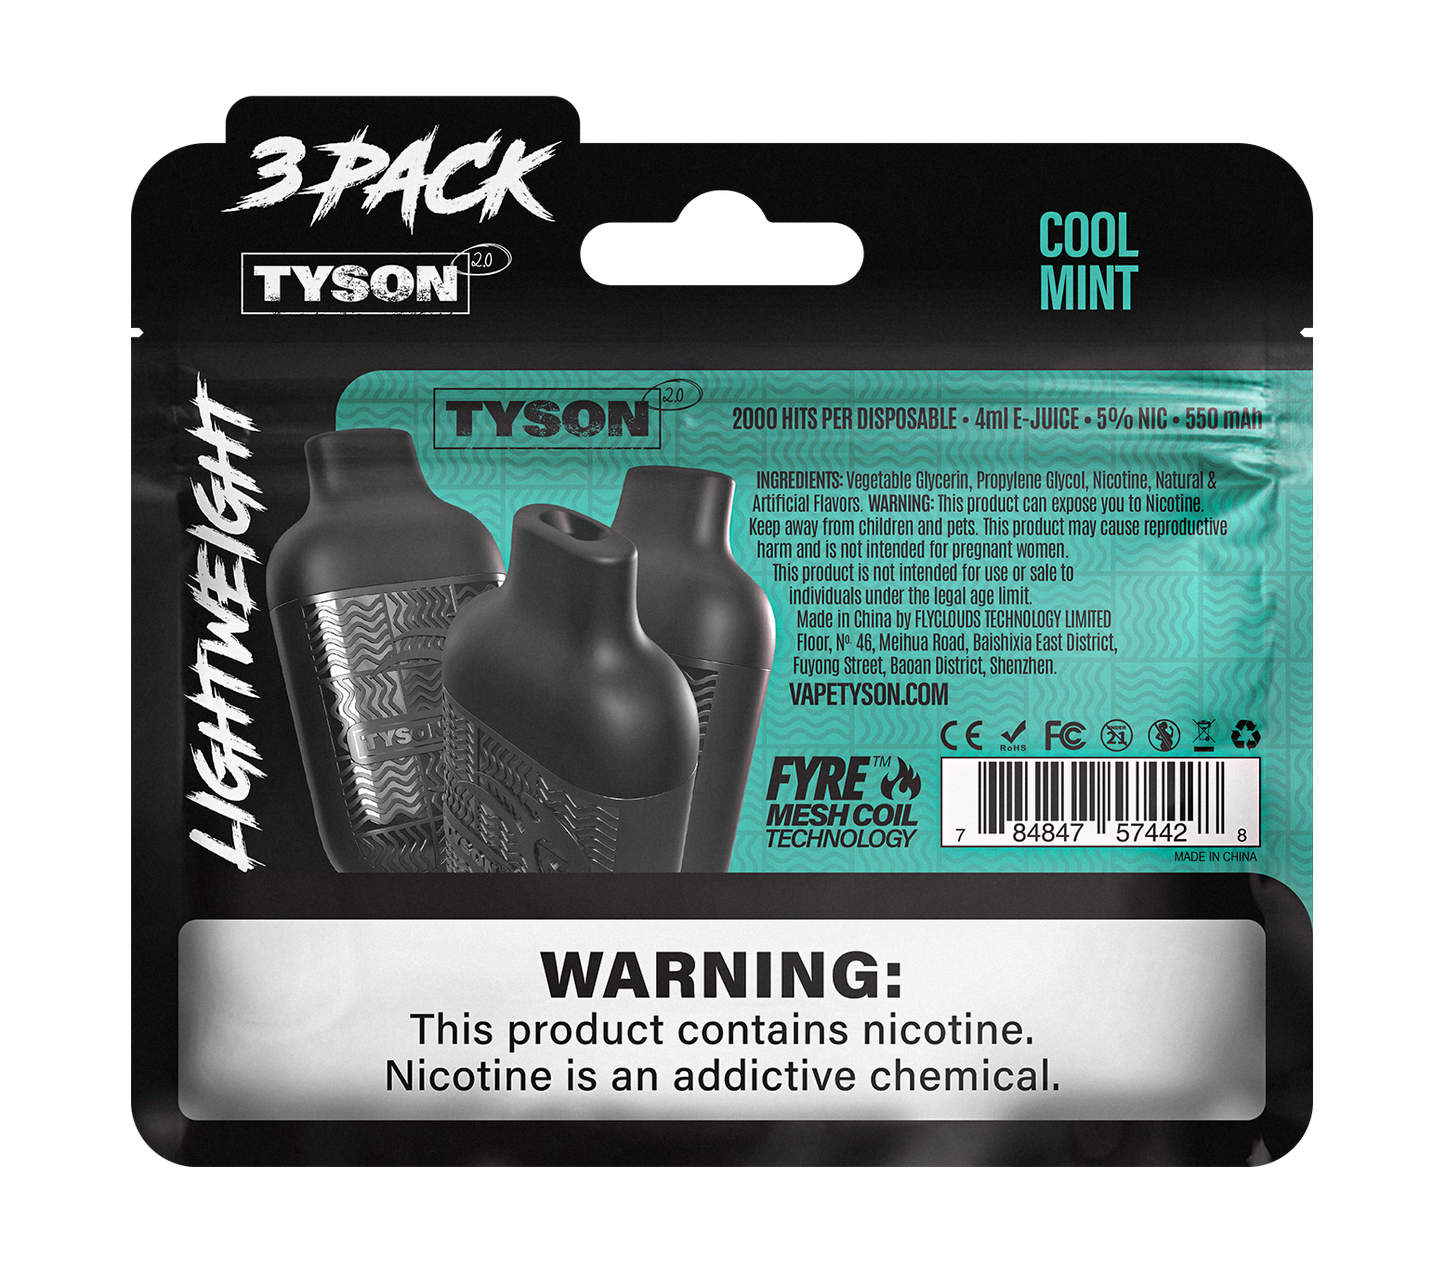 Tyson 2.0 Lightweight 6000 Hits 3 Pack Vape - Cool Mint